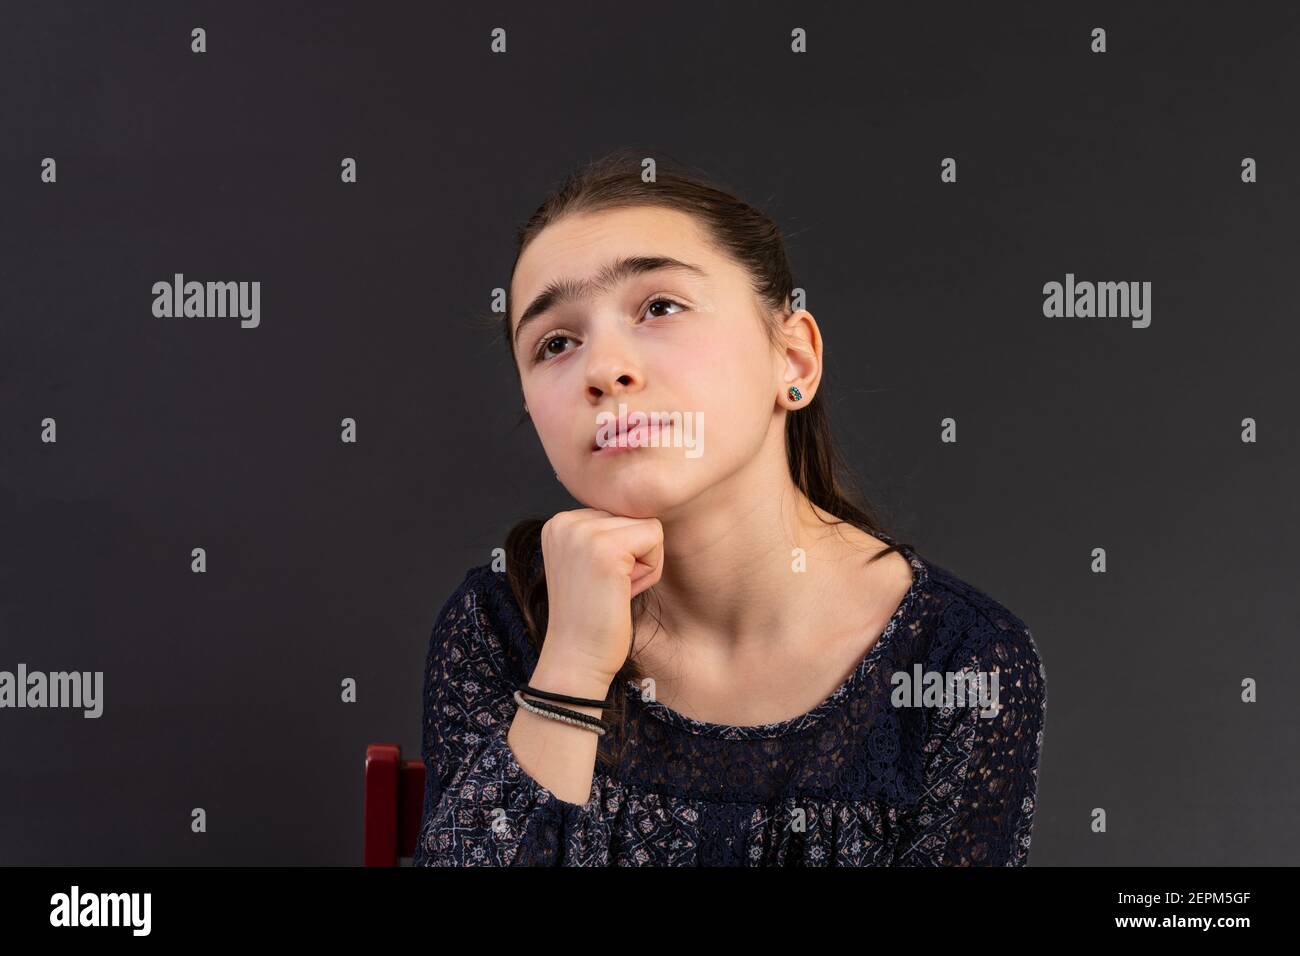 Portrait von jungen Mädchen suchen isoliert vor einem Kreidetafel Hintergrund. Stimmung Gefühle Persönlichkeit und Gesichtsausdruck Konzept. Stockfoto